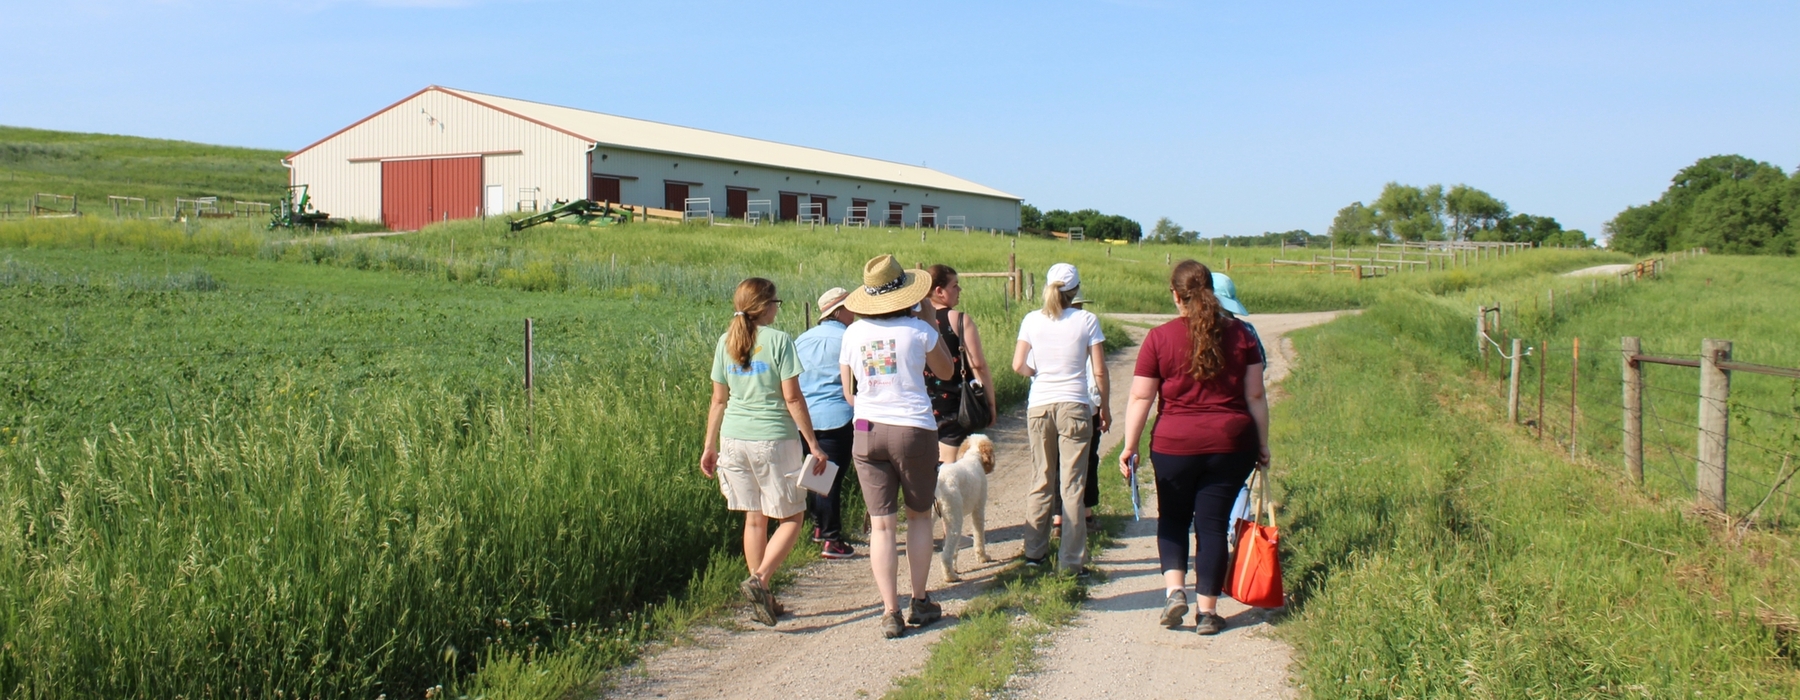 Women landowners walking on farm road